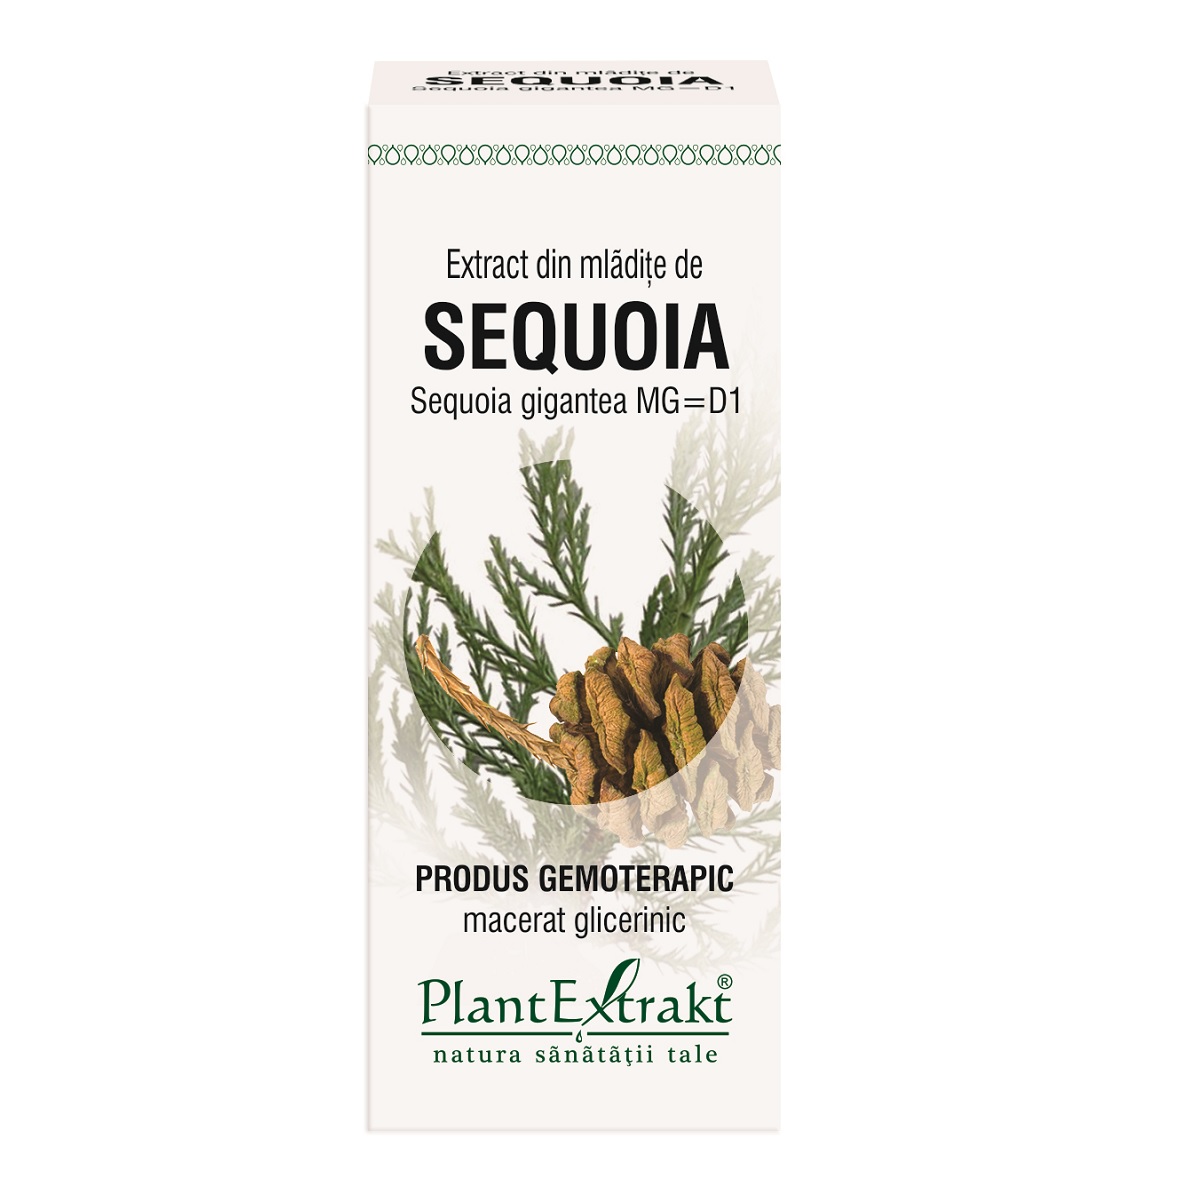 Extract din mladite de sequoia, 50ml, PlantExtrakt